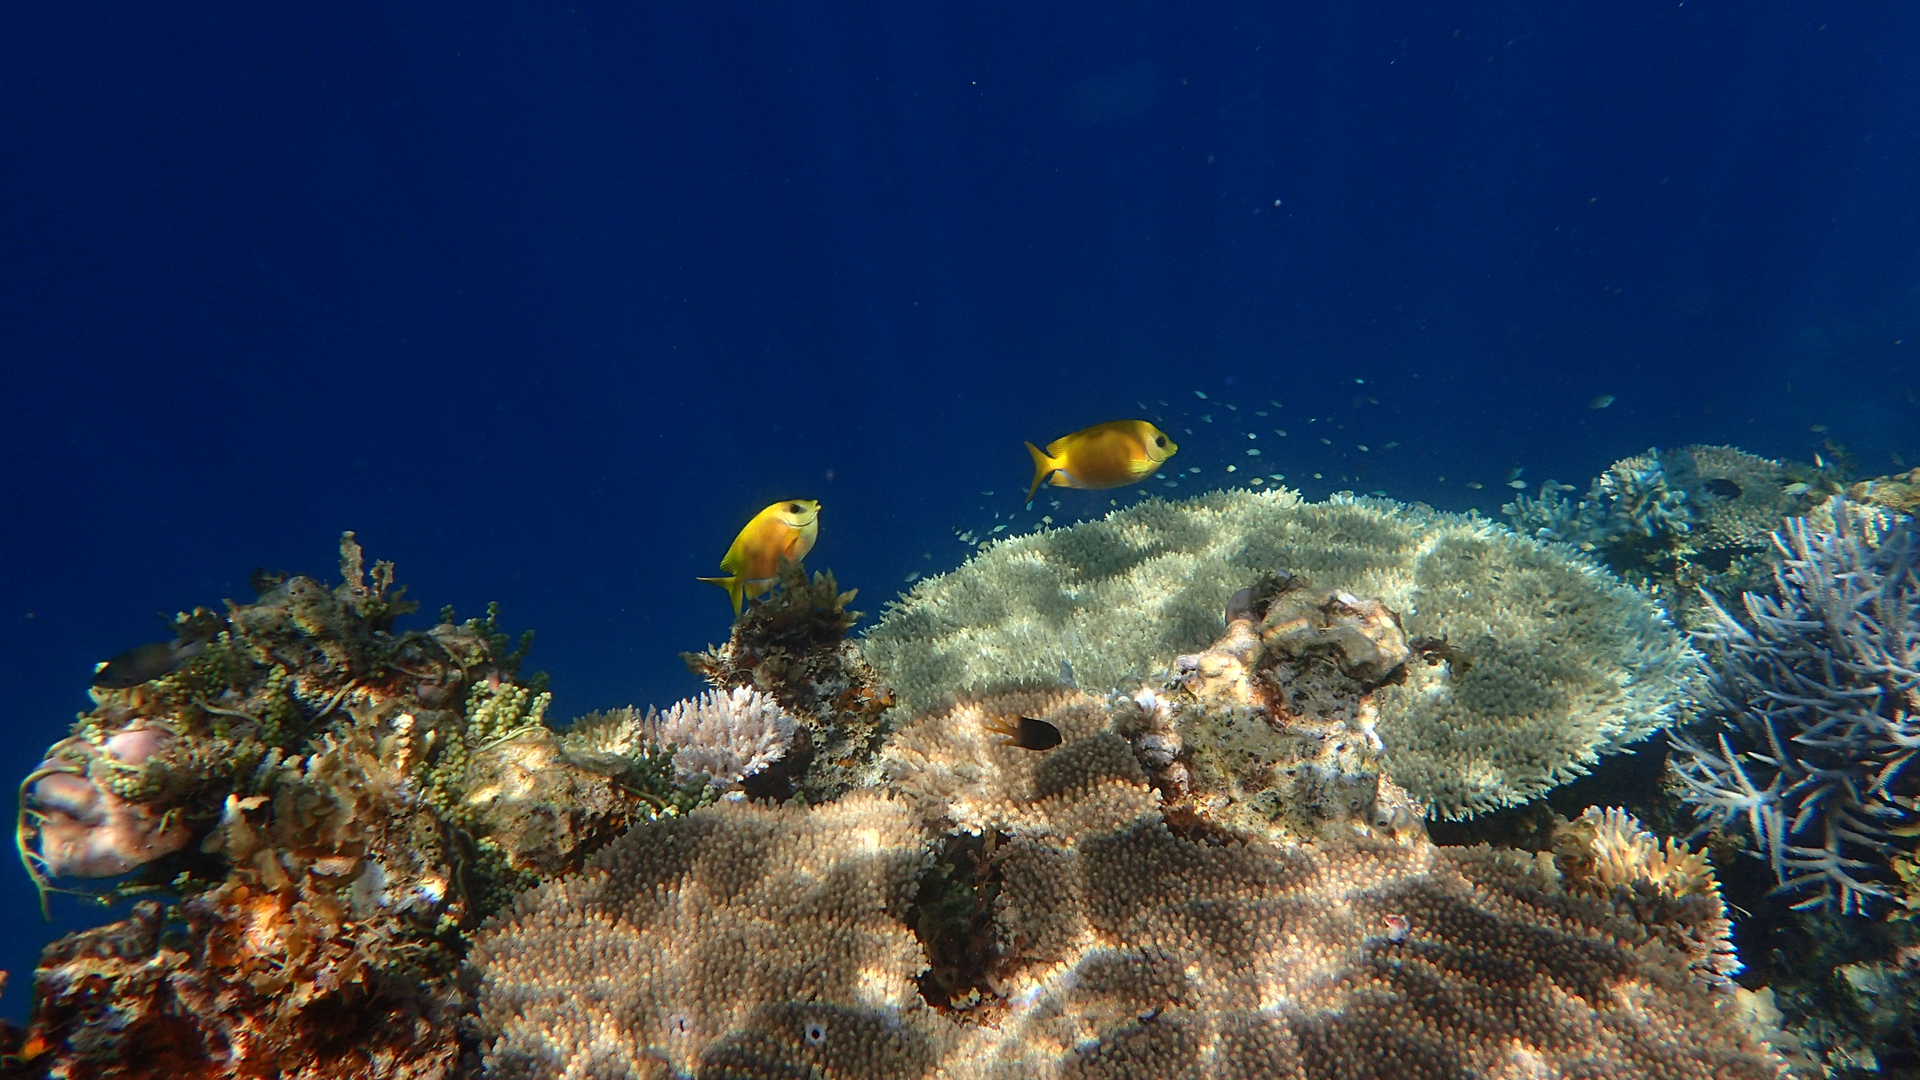 Siganus corallinus